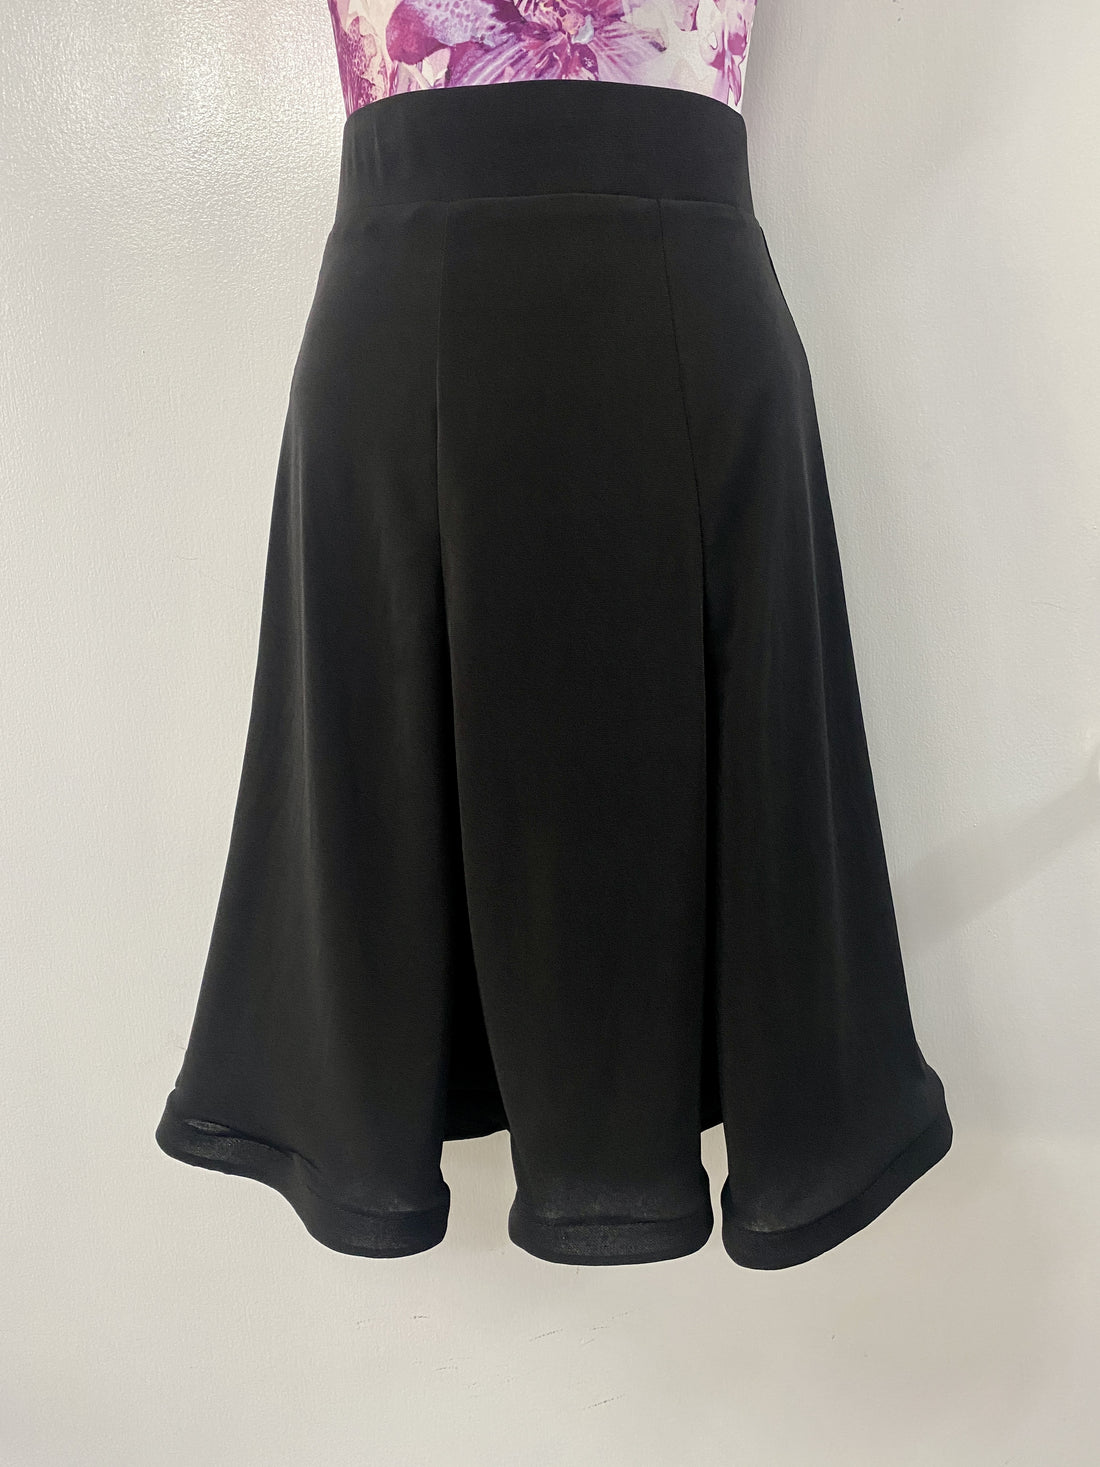 Gore Skirt with Thick Waistband & Thin Crinoline